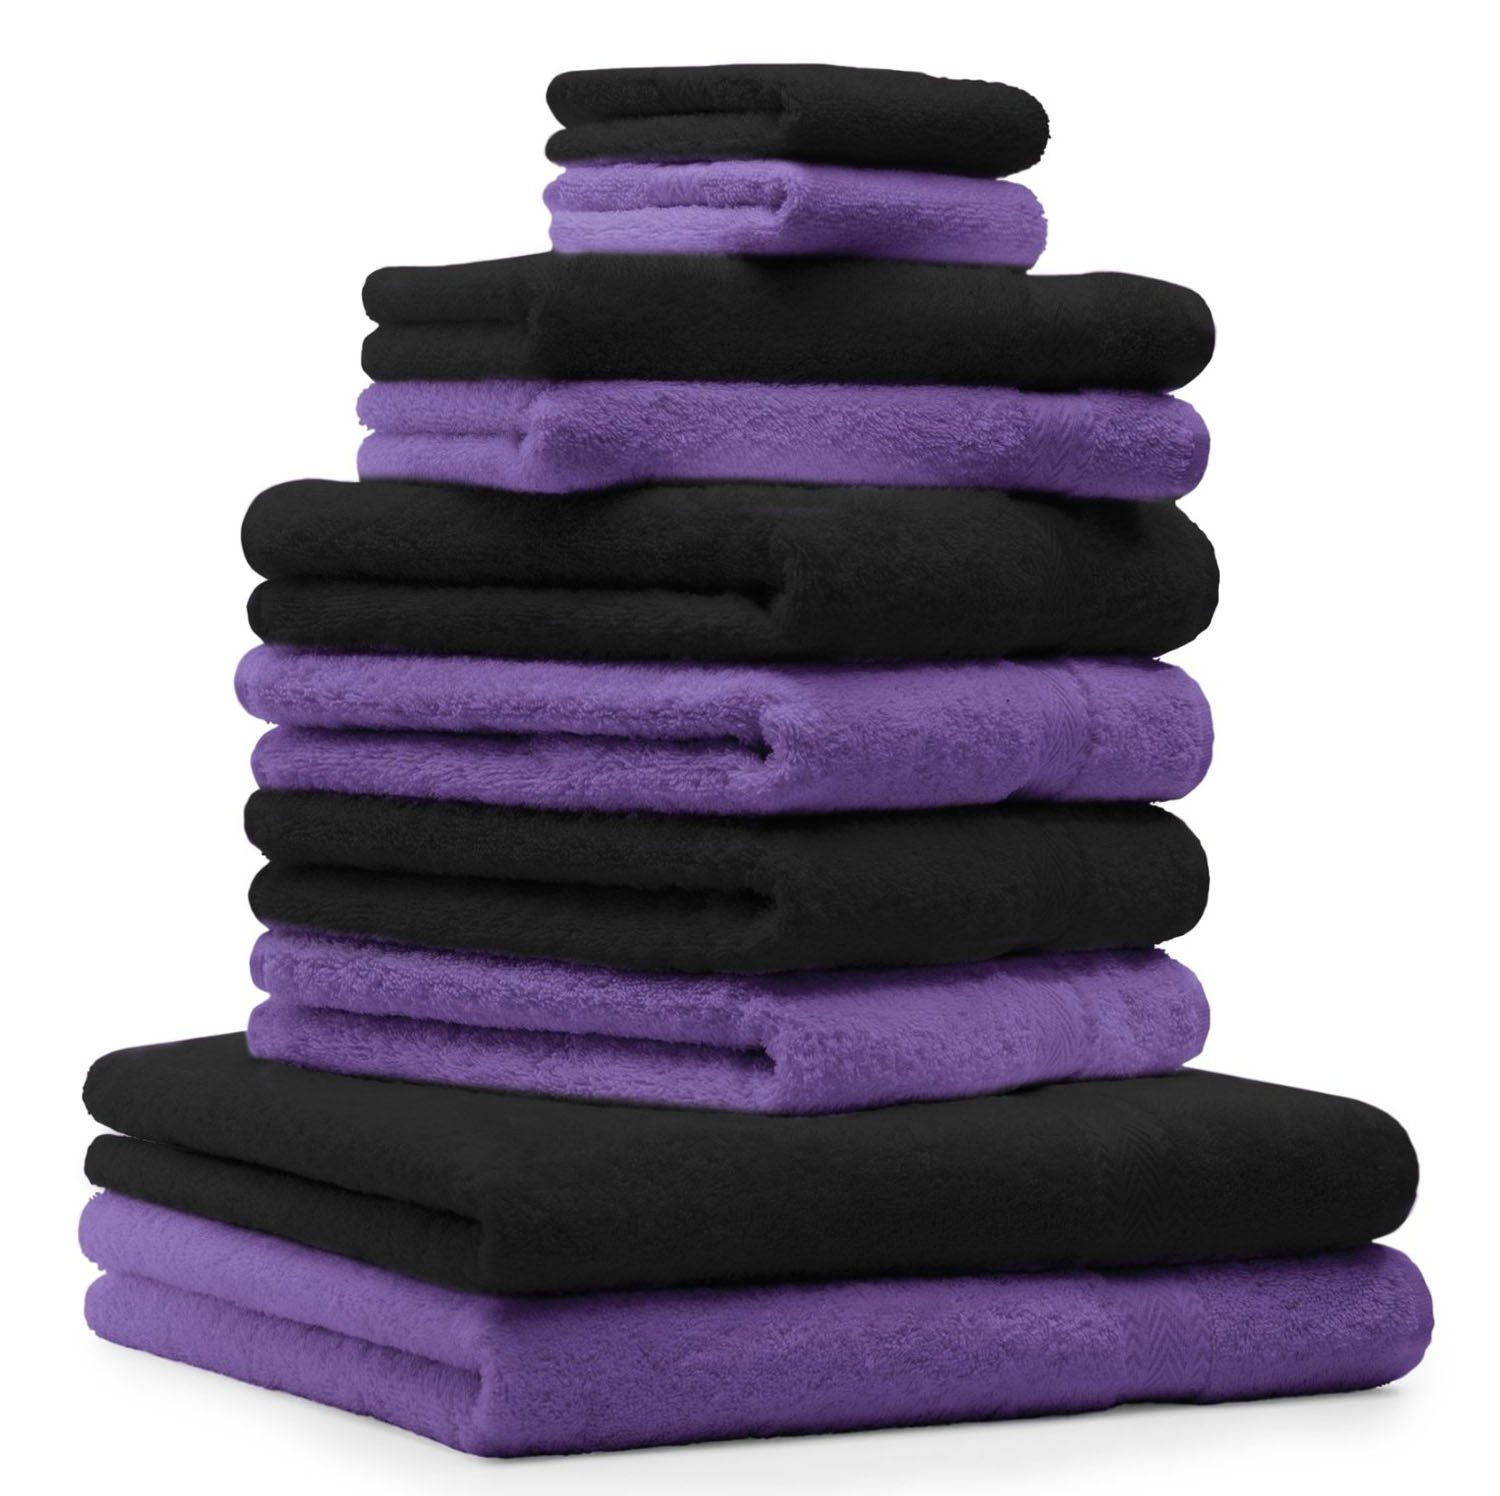 Betz Handtuch Set 10-TLG. Handtuch-Set Farbe Lila & Schwarz, 100% Baumwolle,  (10-tlg) | Handtuch-Sets